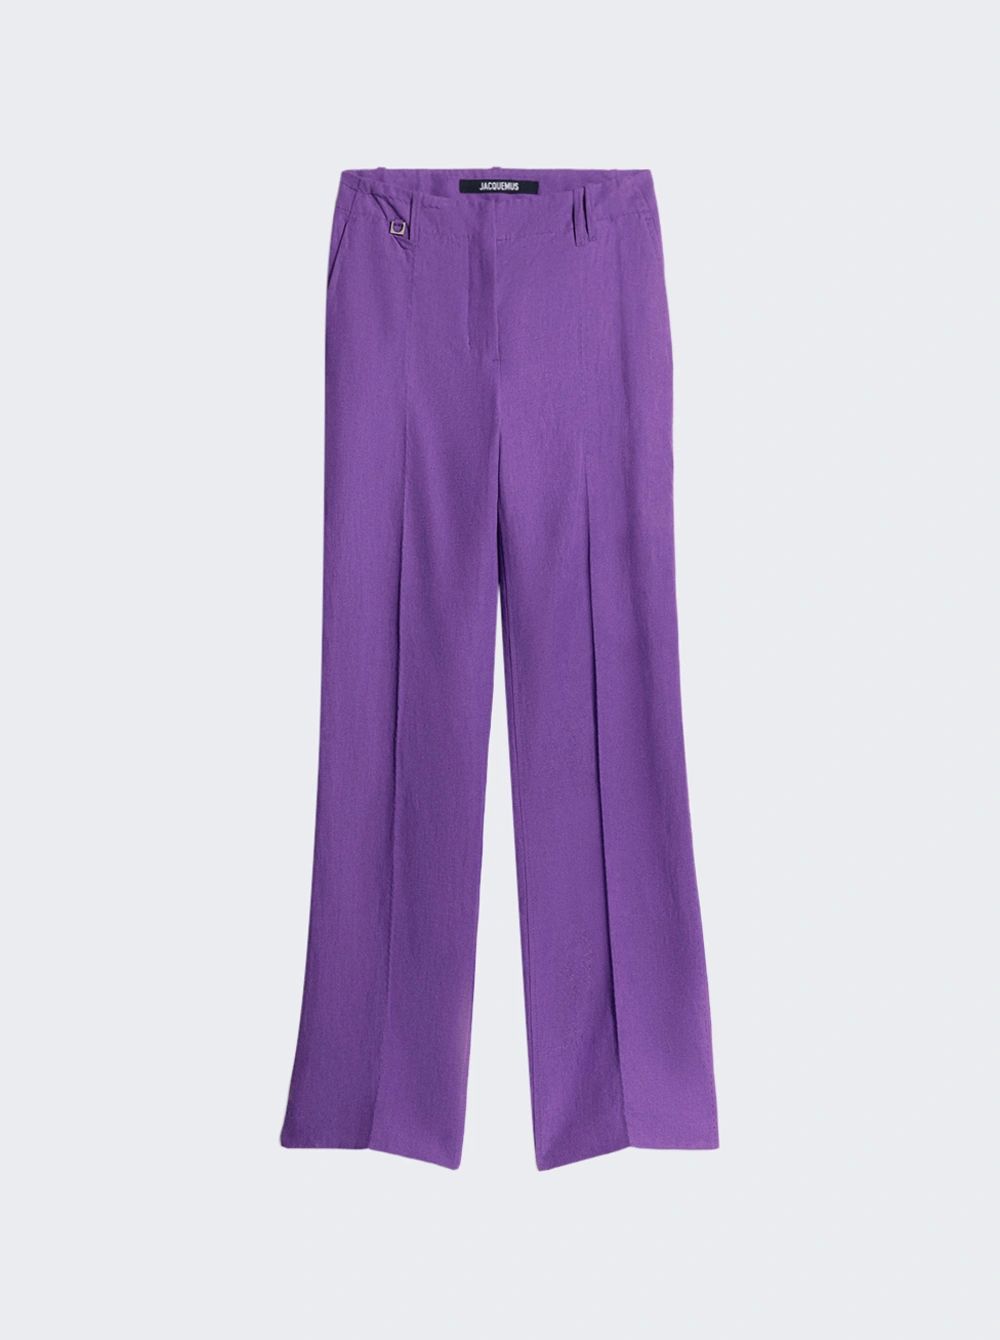 Le Pantalon Cordao Purple | The Webster